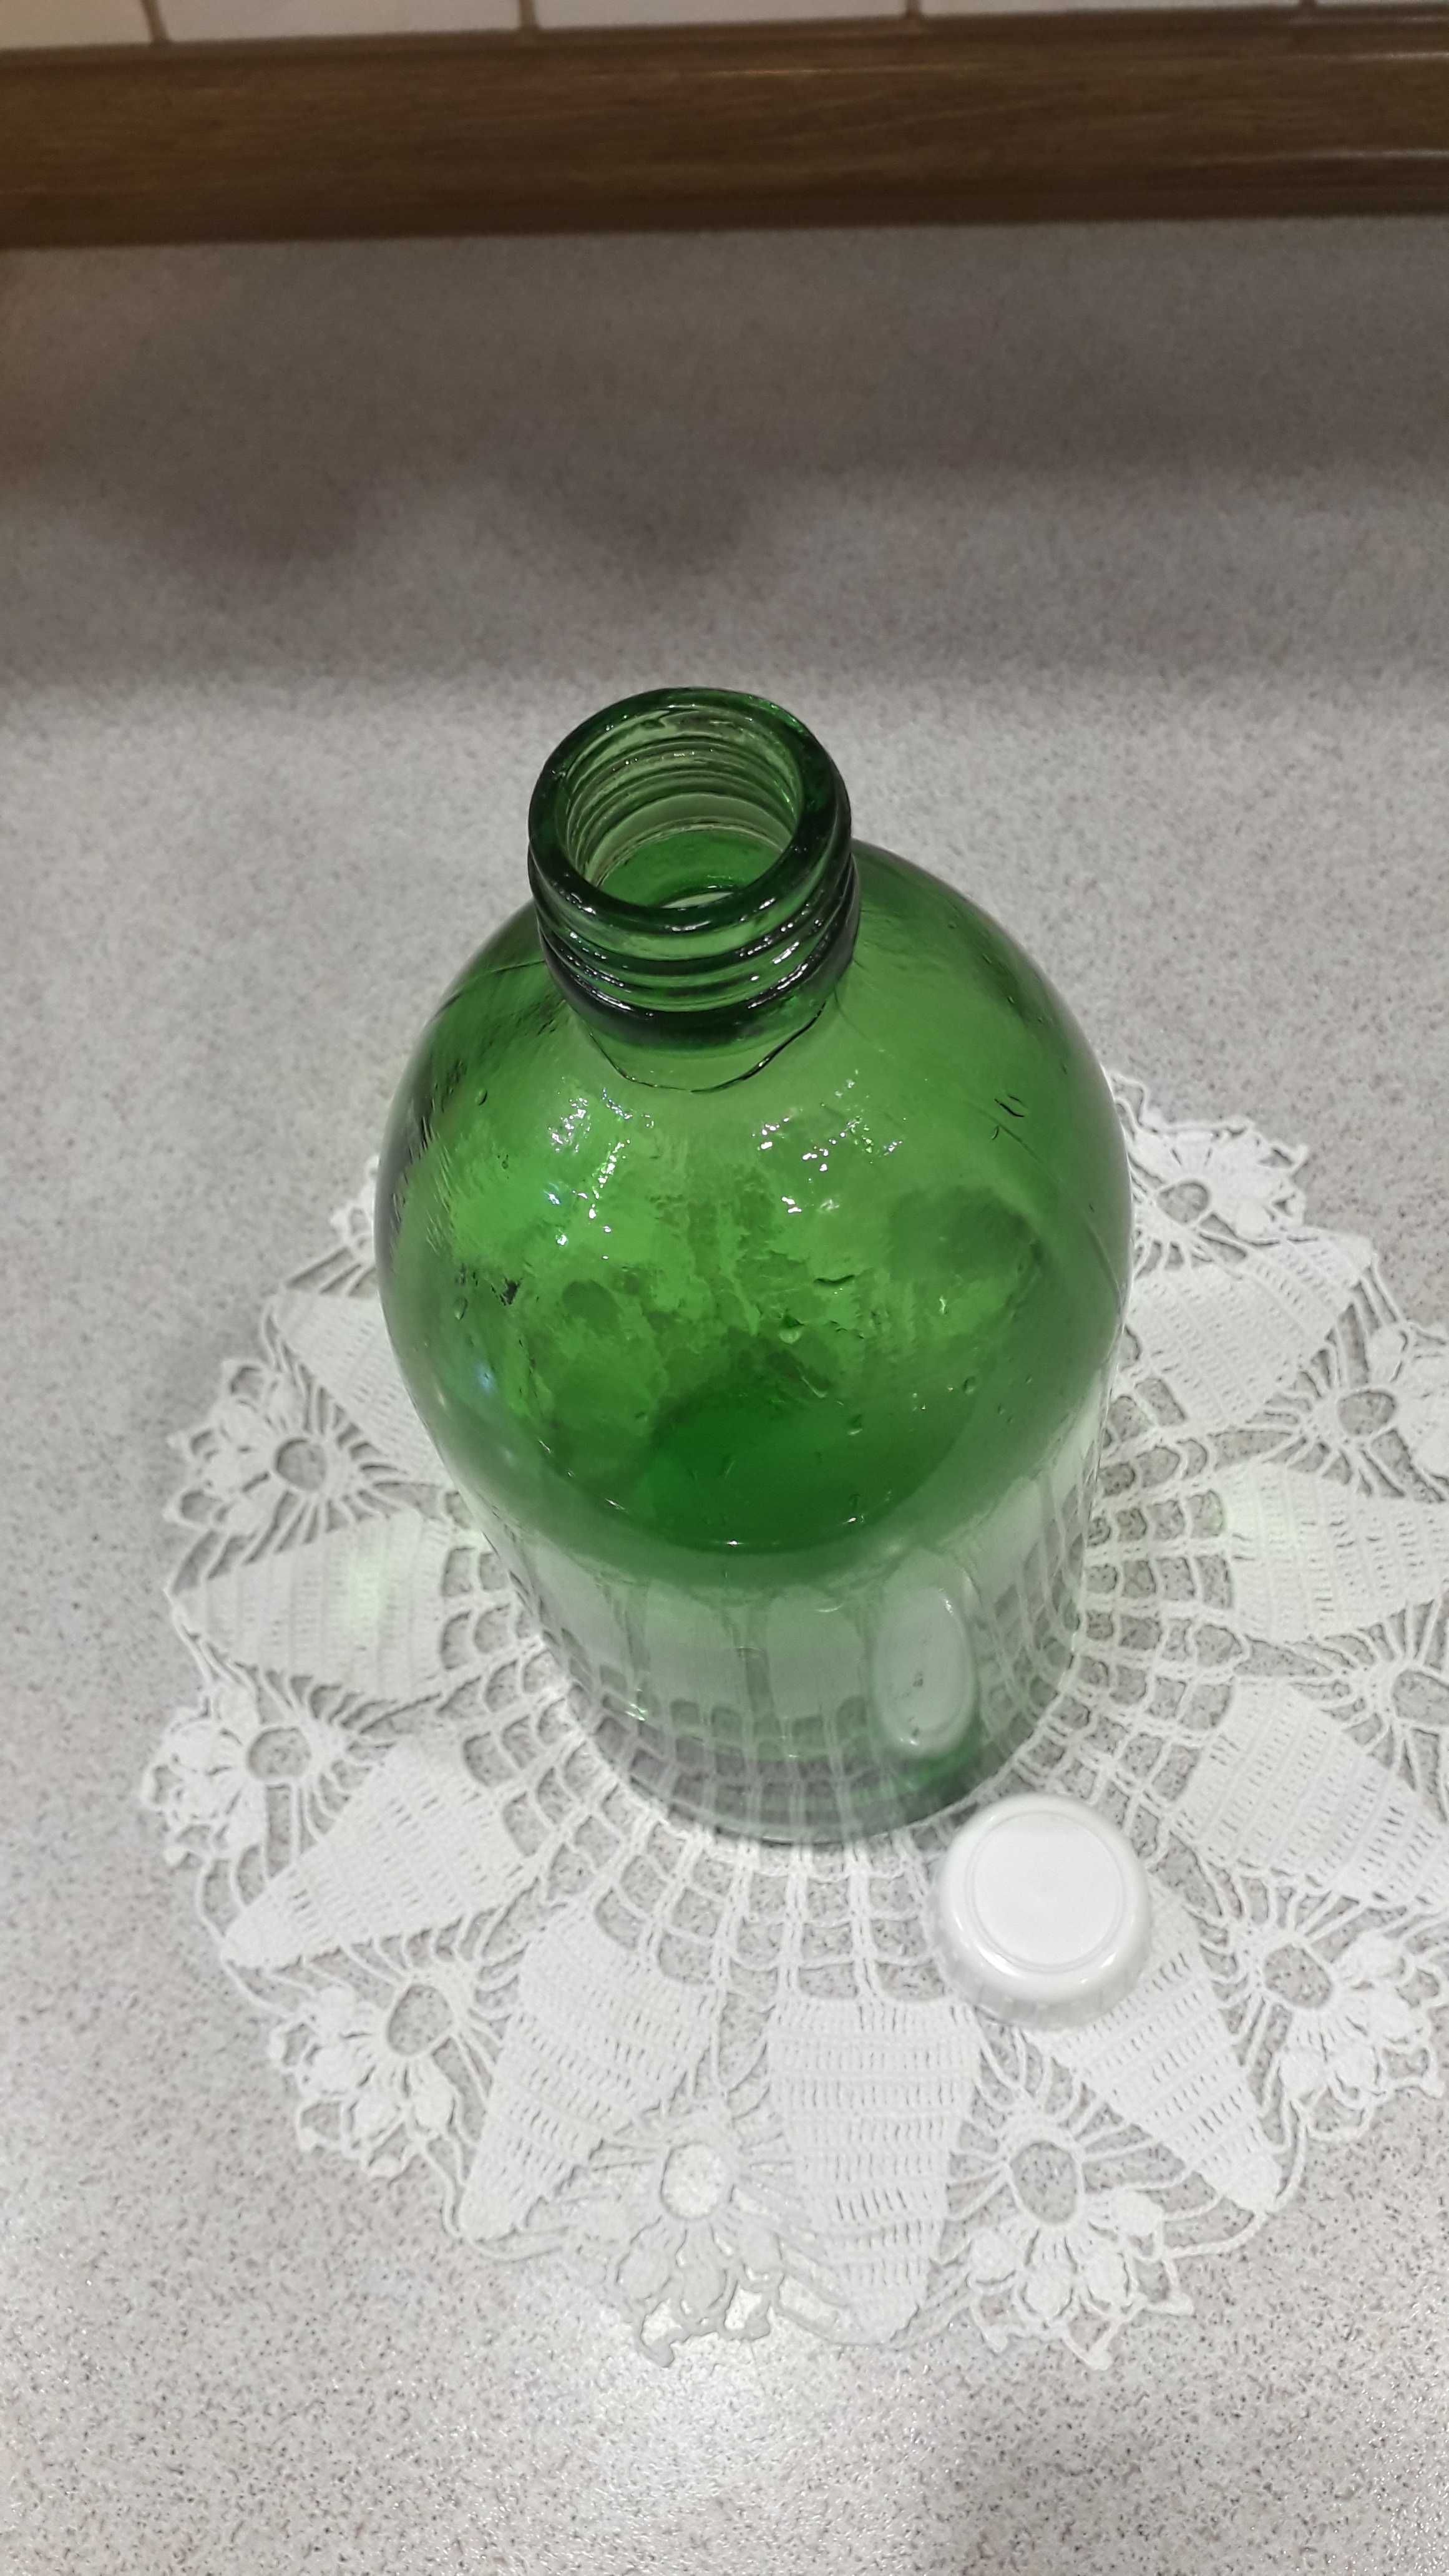 Stara apteczna butelka z zielonego szkła 1000 ml